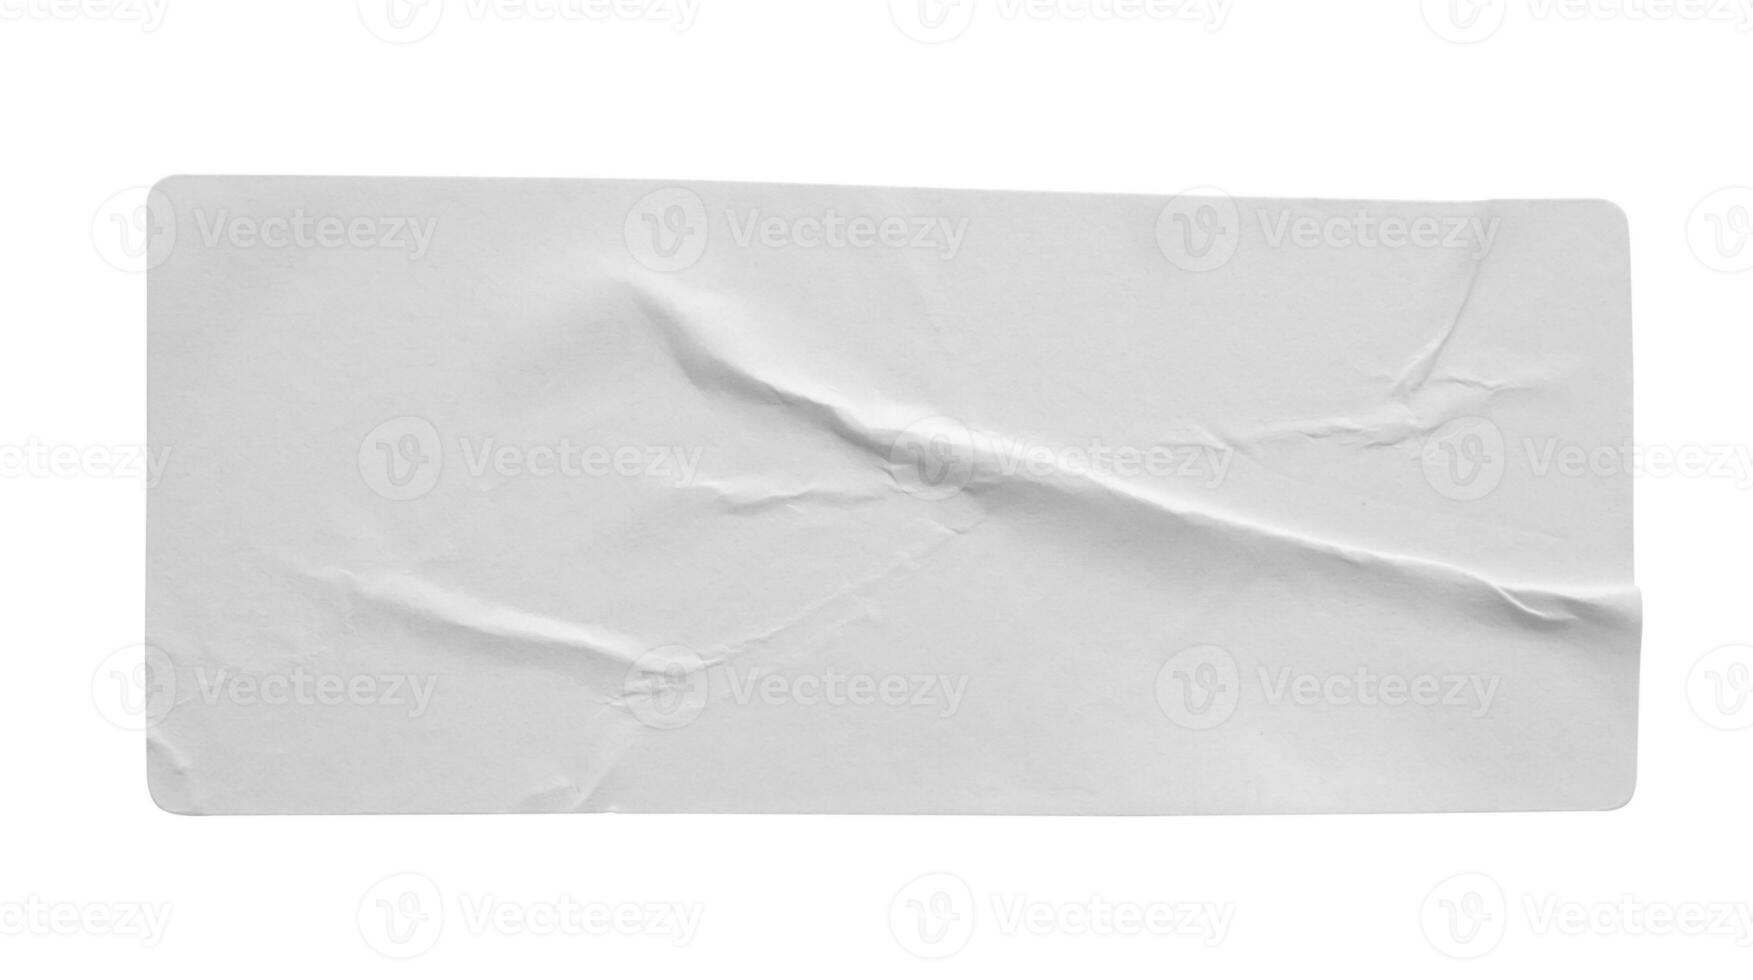 Étiquette autocollante papier isolé sur fond blanc photo